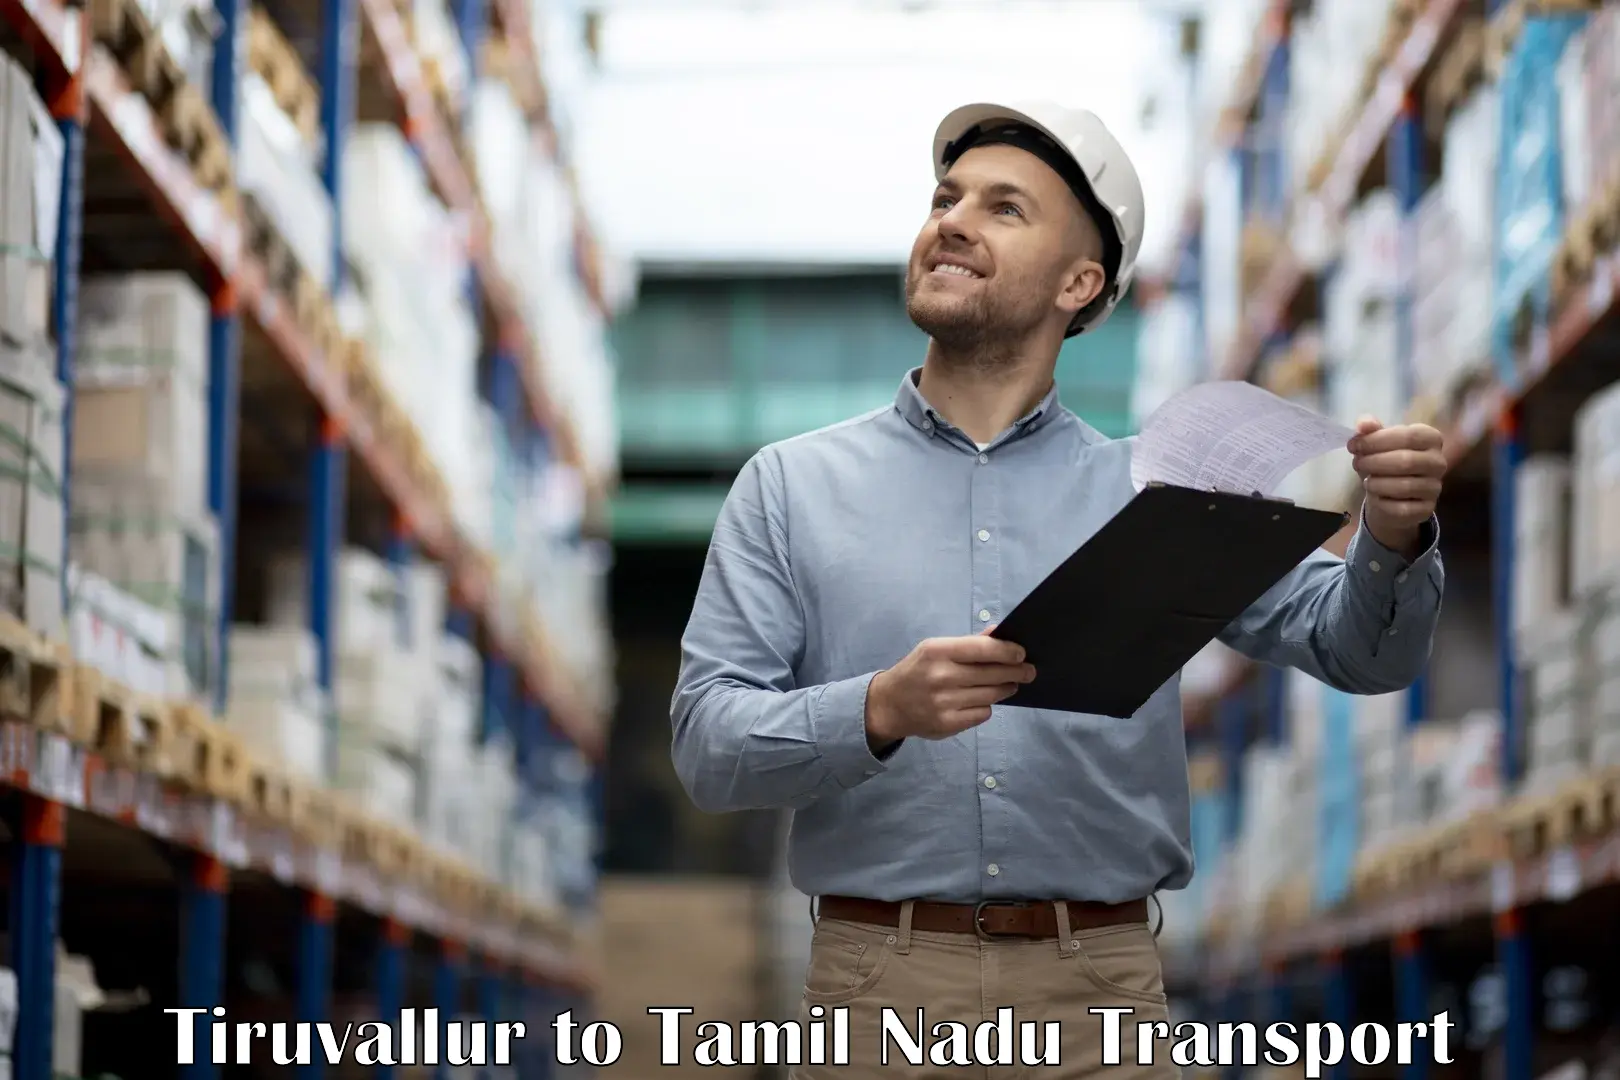 Nationwide transport services in Tiruvallur to IIIT Tiruchirappalli